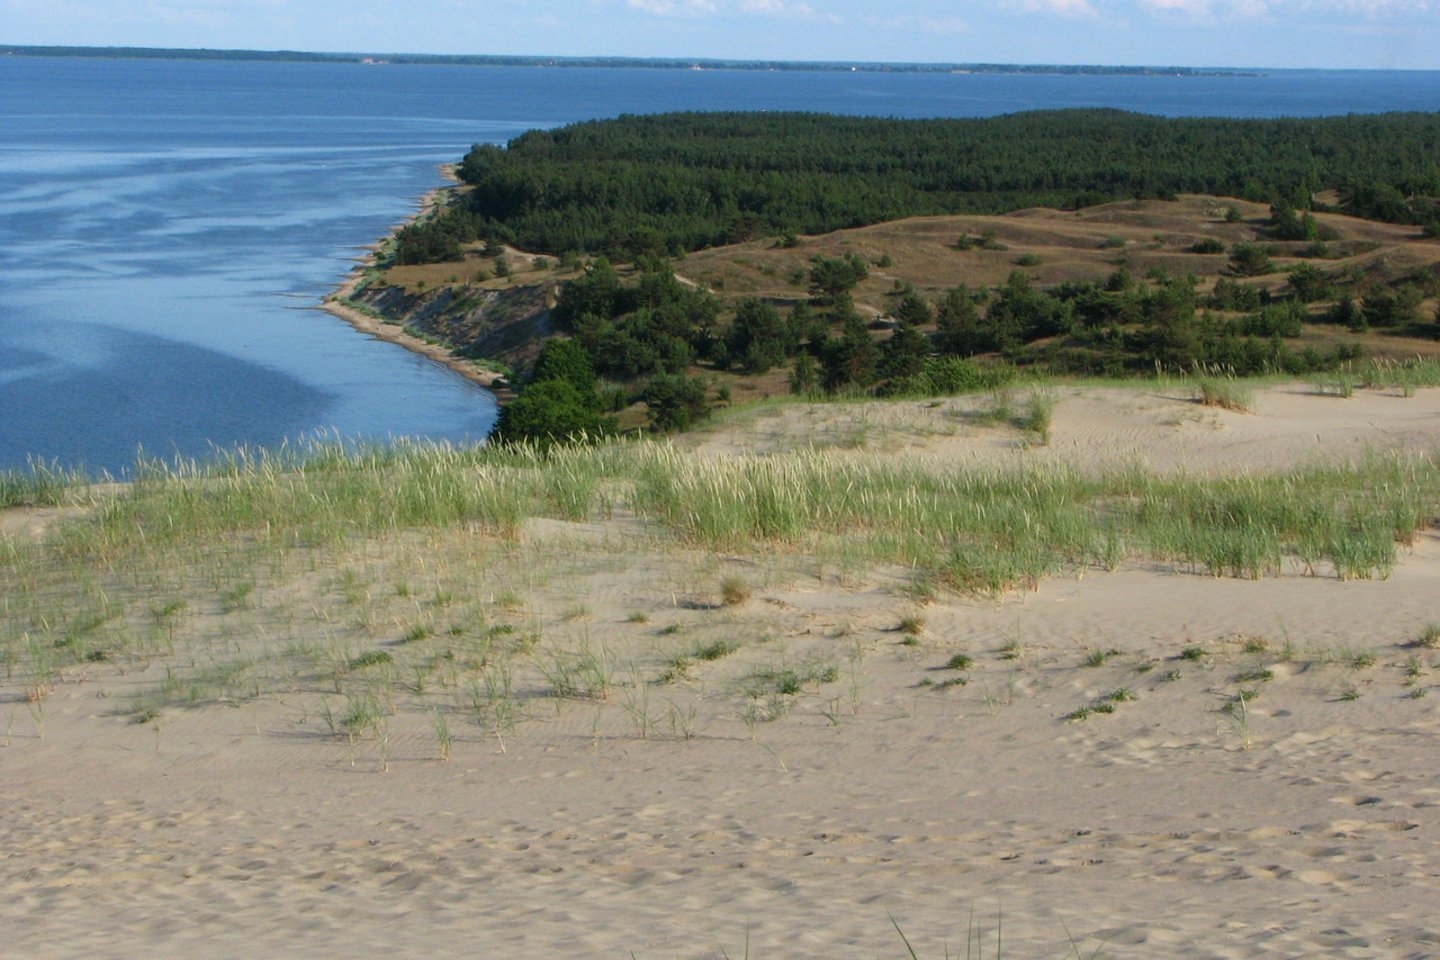 Kuršių nerija įtraukta į UNESCO Pasaulio paveldo sąrašą kaip išskirtinis smėlio kopų kraštovaizdis.<br>T.Stasevičiaus asociatyvi nuotr.